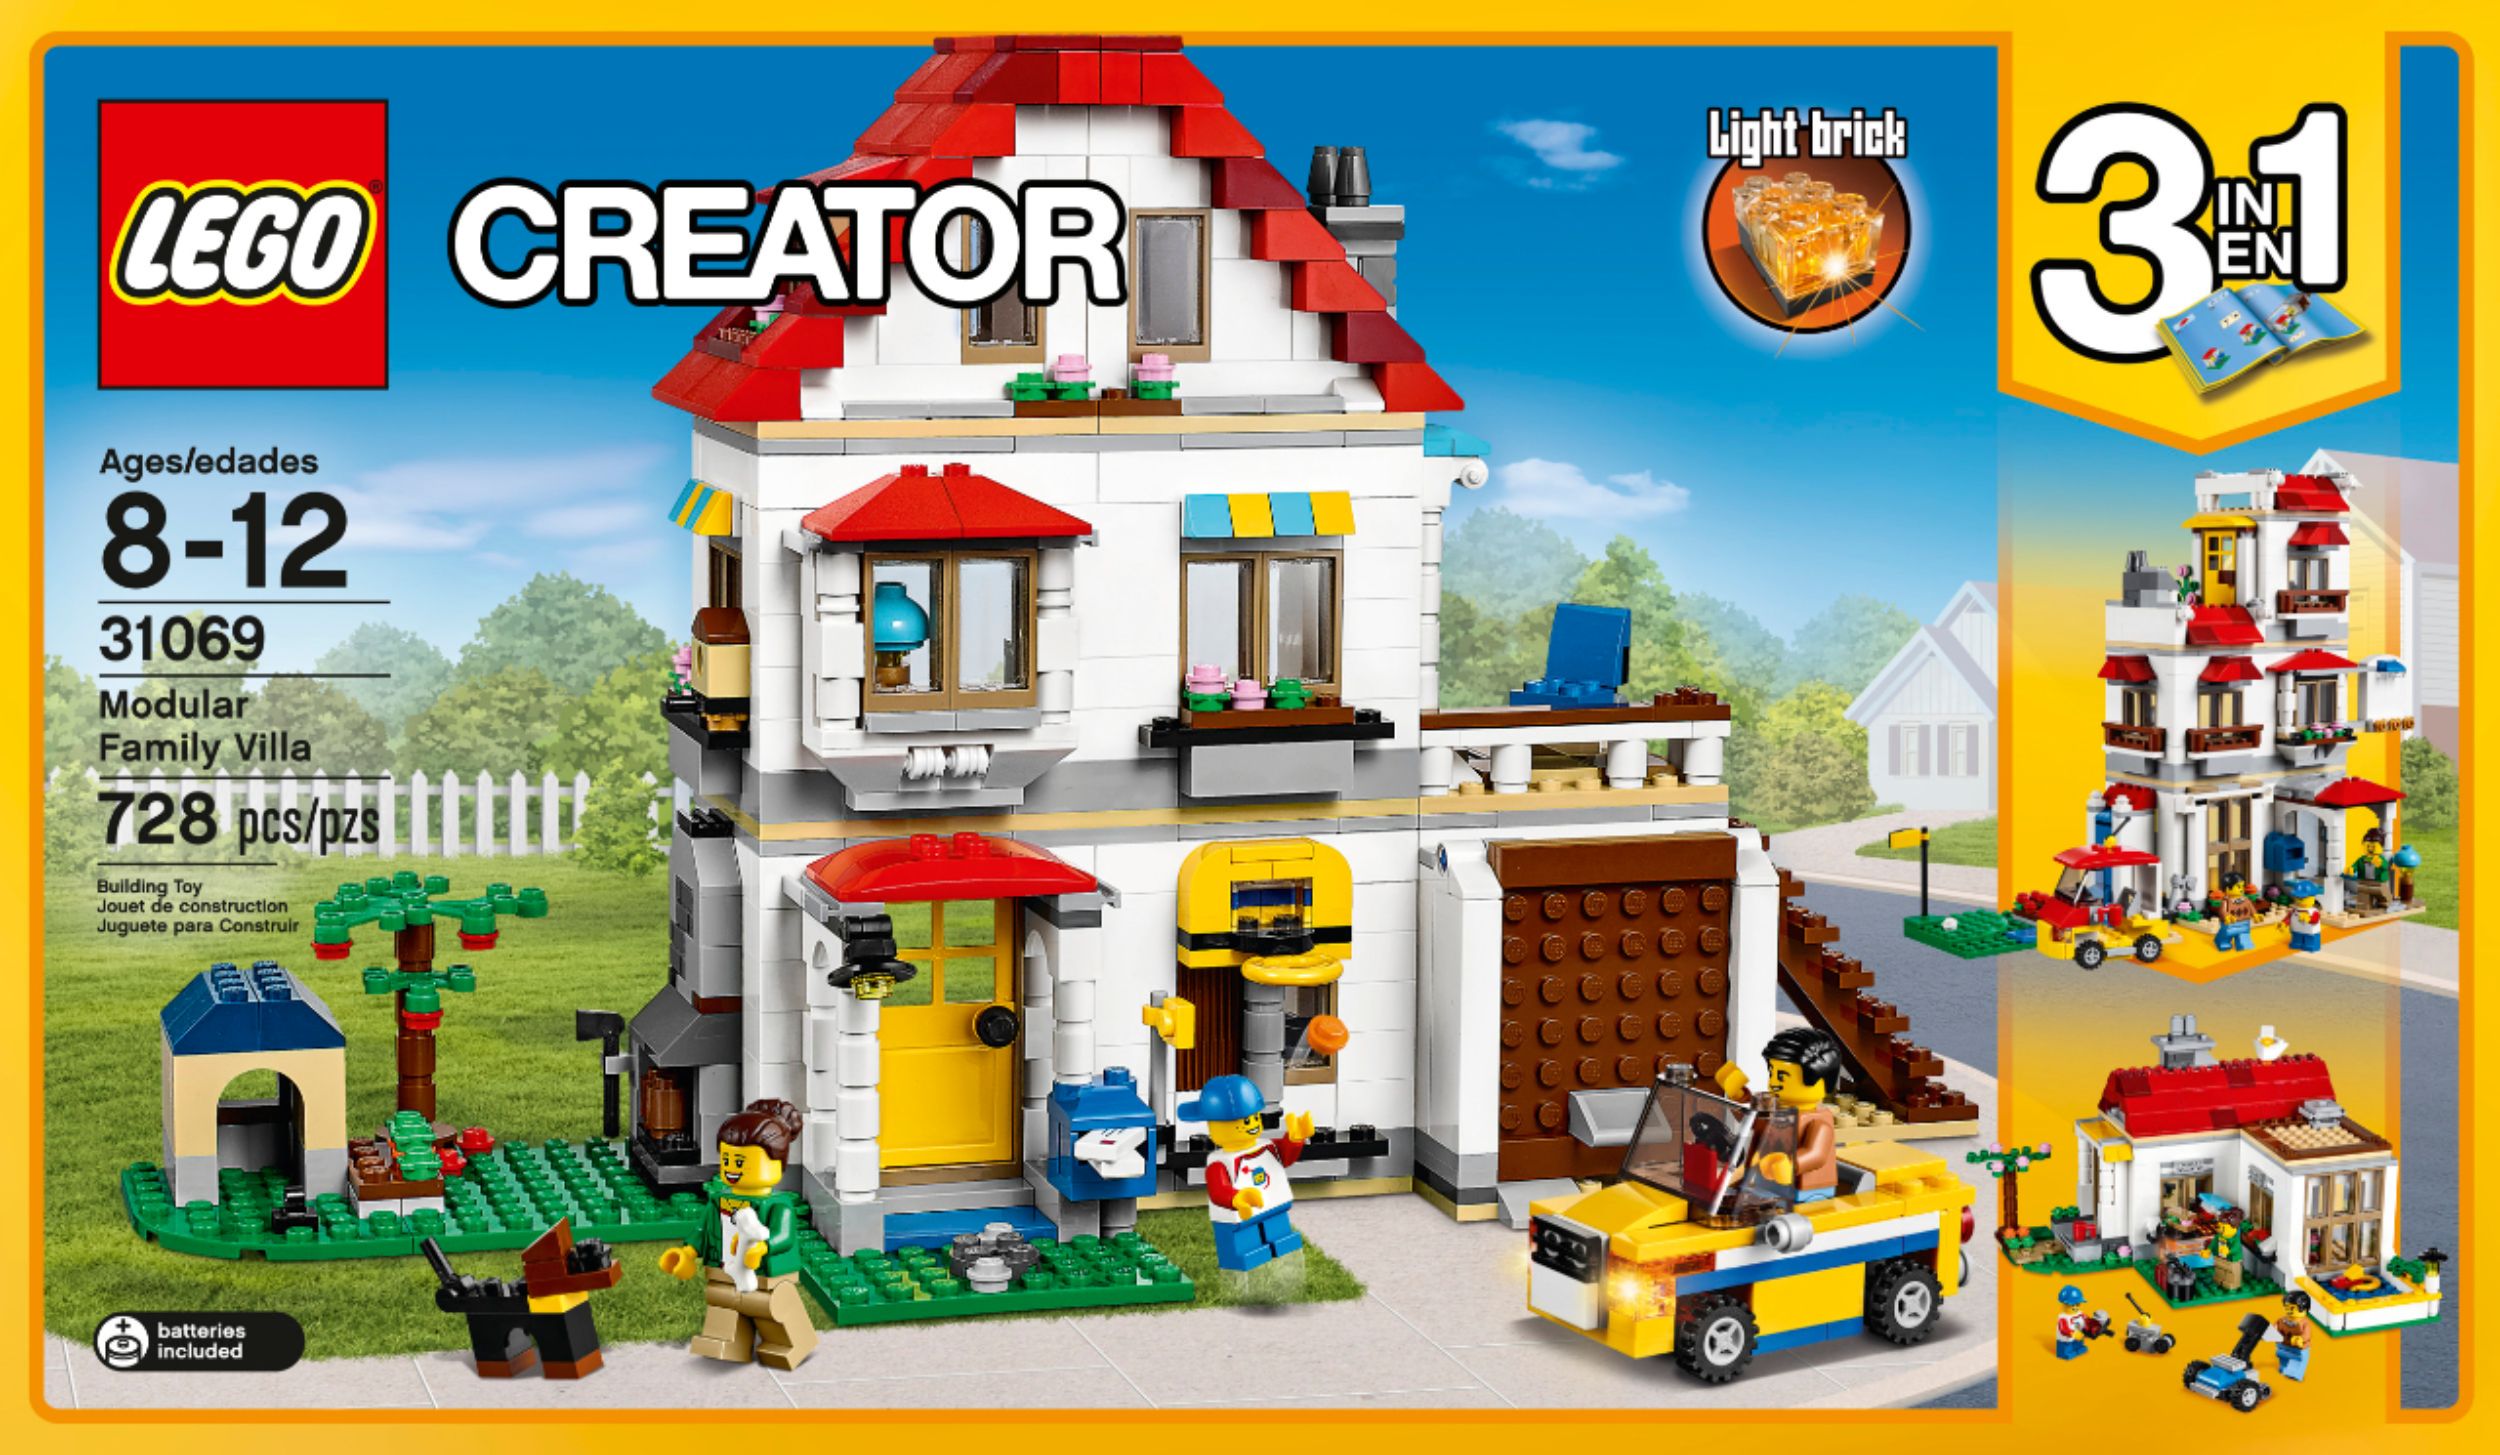 Best Buy: Creator 3-in-1 Modular Family Villa 31069 6175275